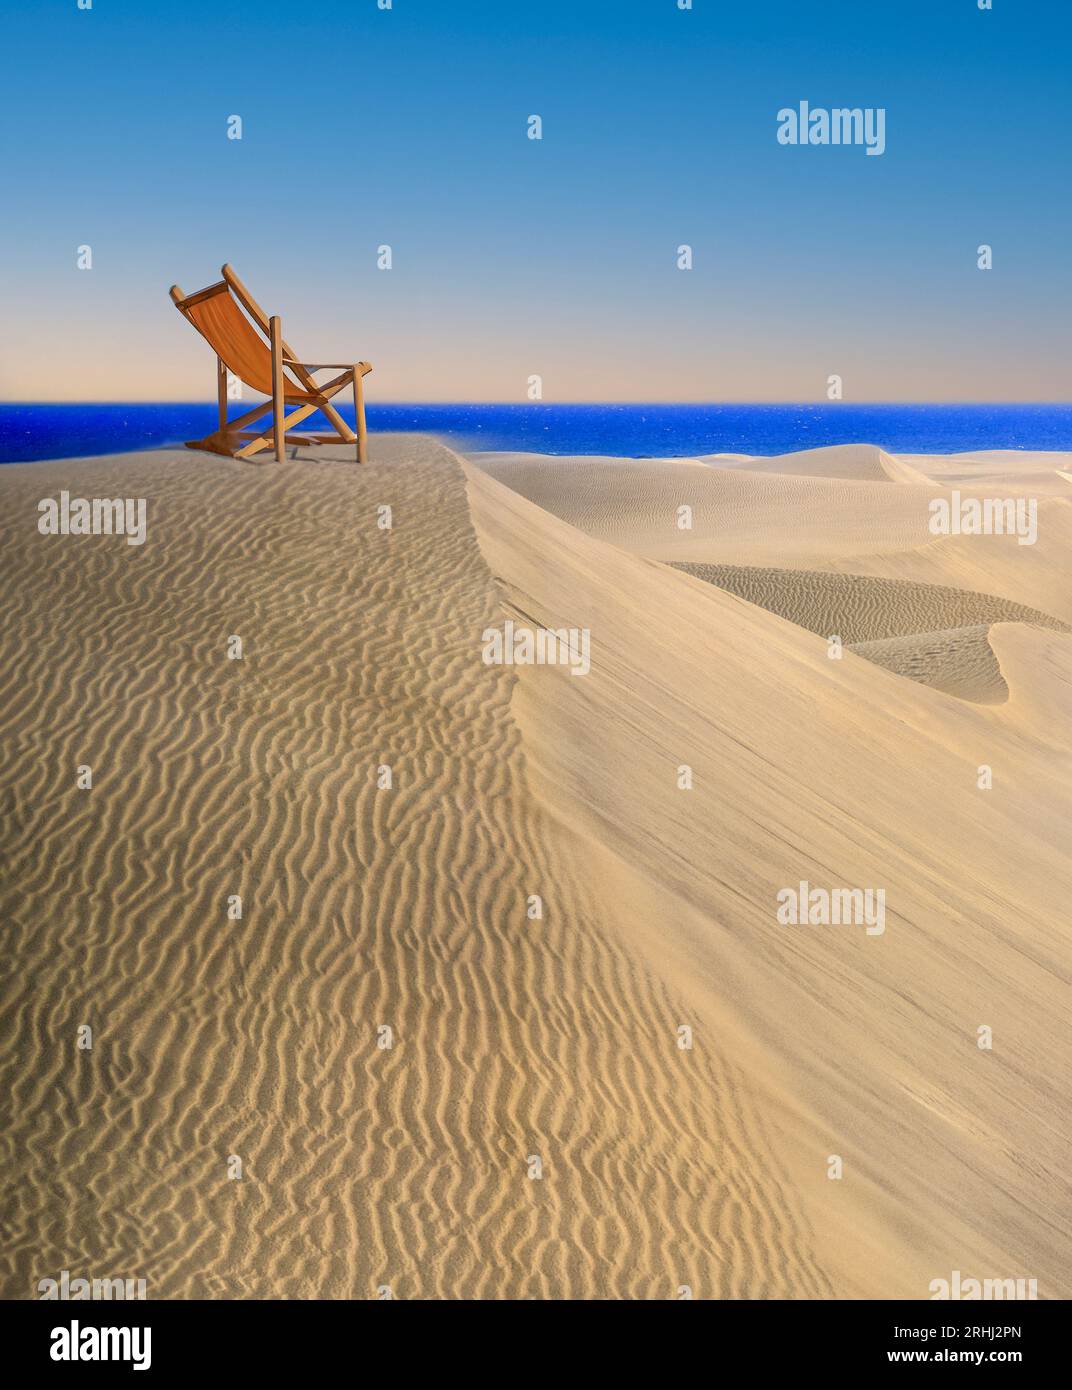 Sdraio spiaggia di dune di sabbia vista mare, sole, cielo blu, sole, sole, sole, sole e cielo unico, vacanza "lontano da tutto", riposo, relax e relax Foto Stock